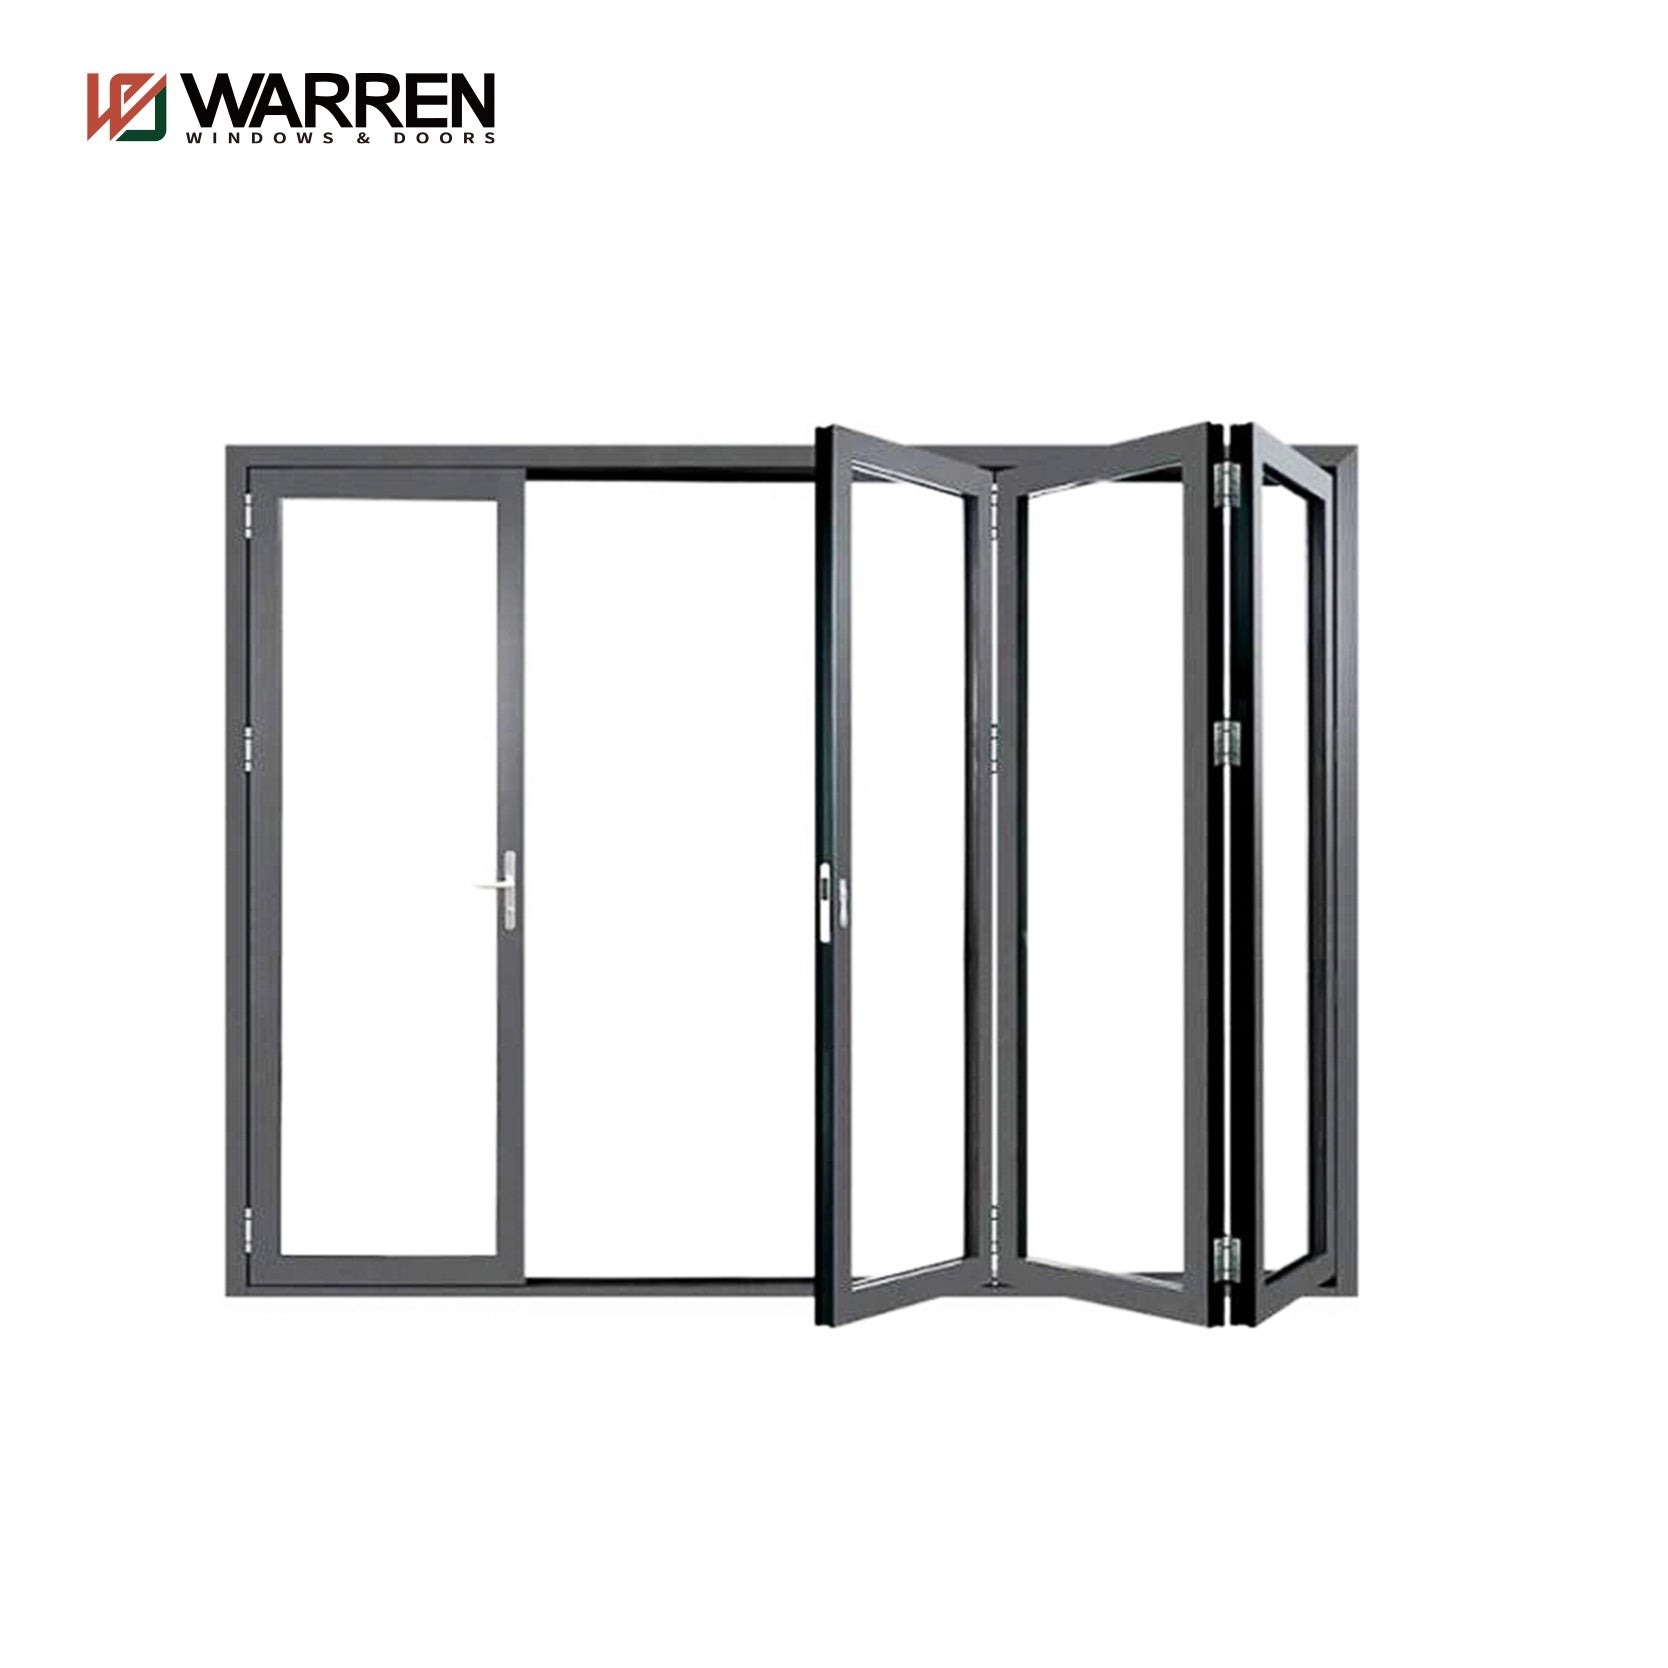 Warren 16 x 8 ft folding door patio glass waterproof folding door